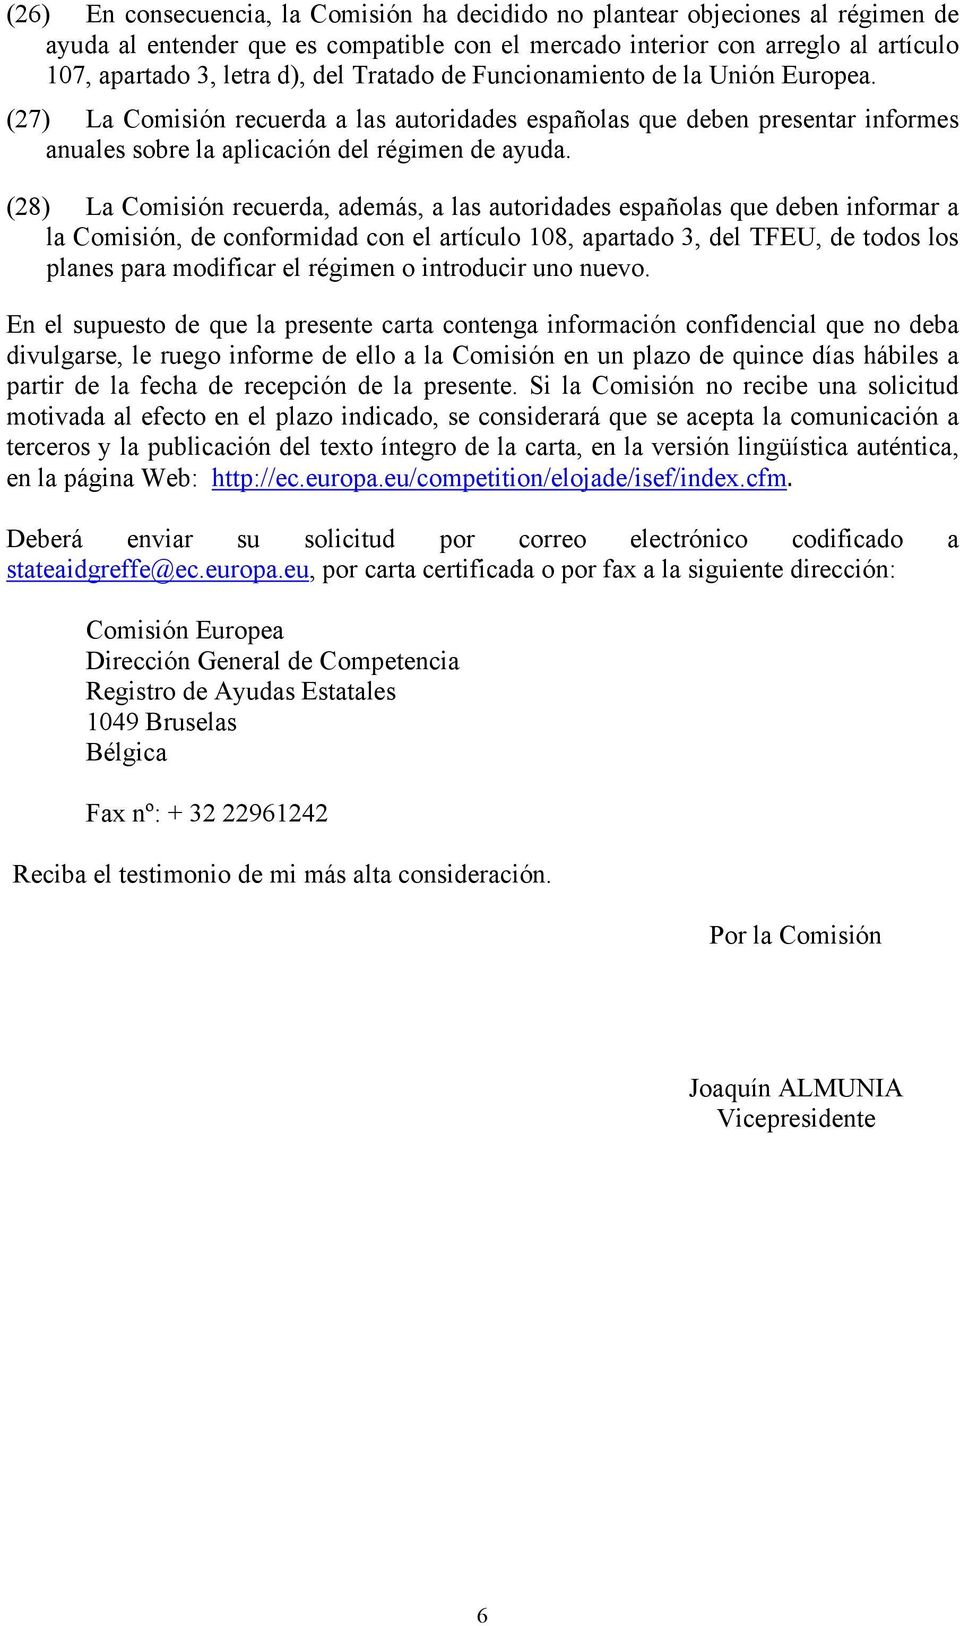 (28) La Comisión recuerda, además, a las autoridades españolas que deben informar a la Comisión, de conformidad con el artículo 108, apartado 3, del TFEU, de todos los planes para modificar el